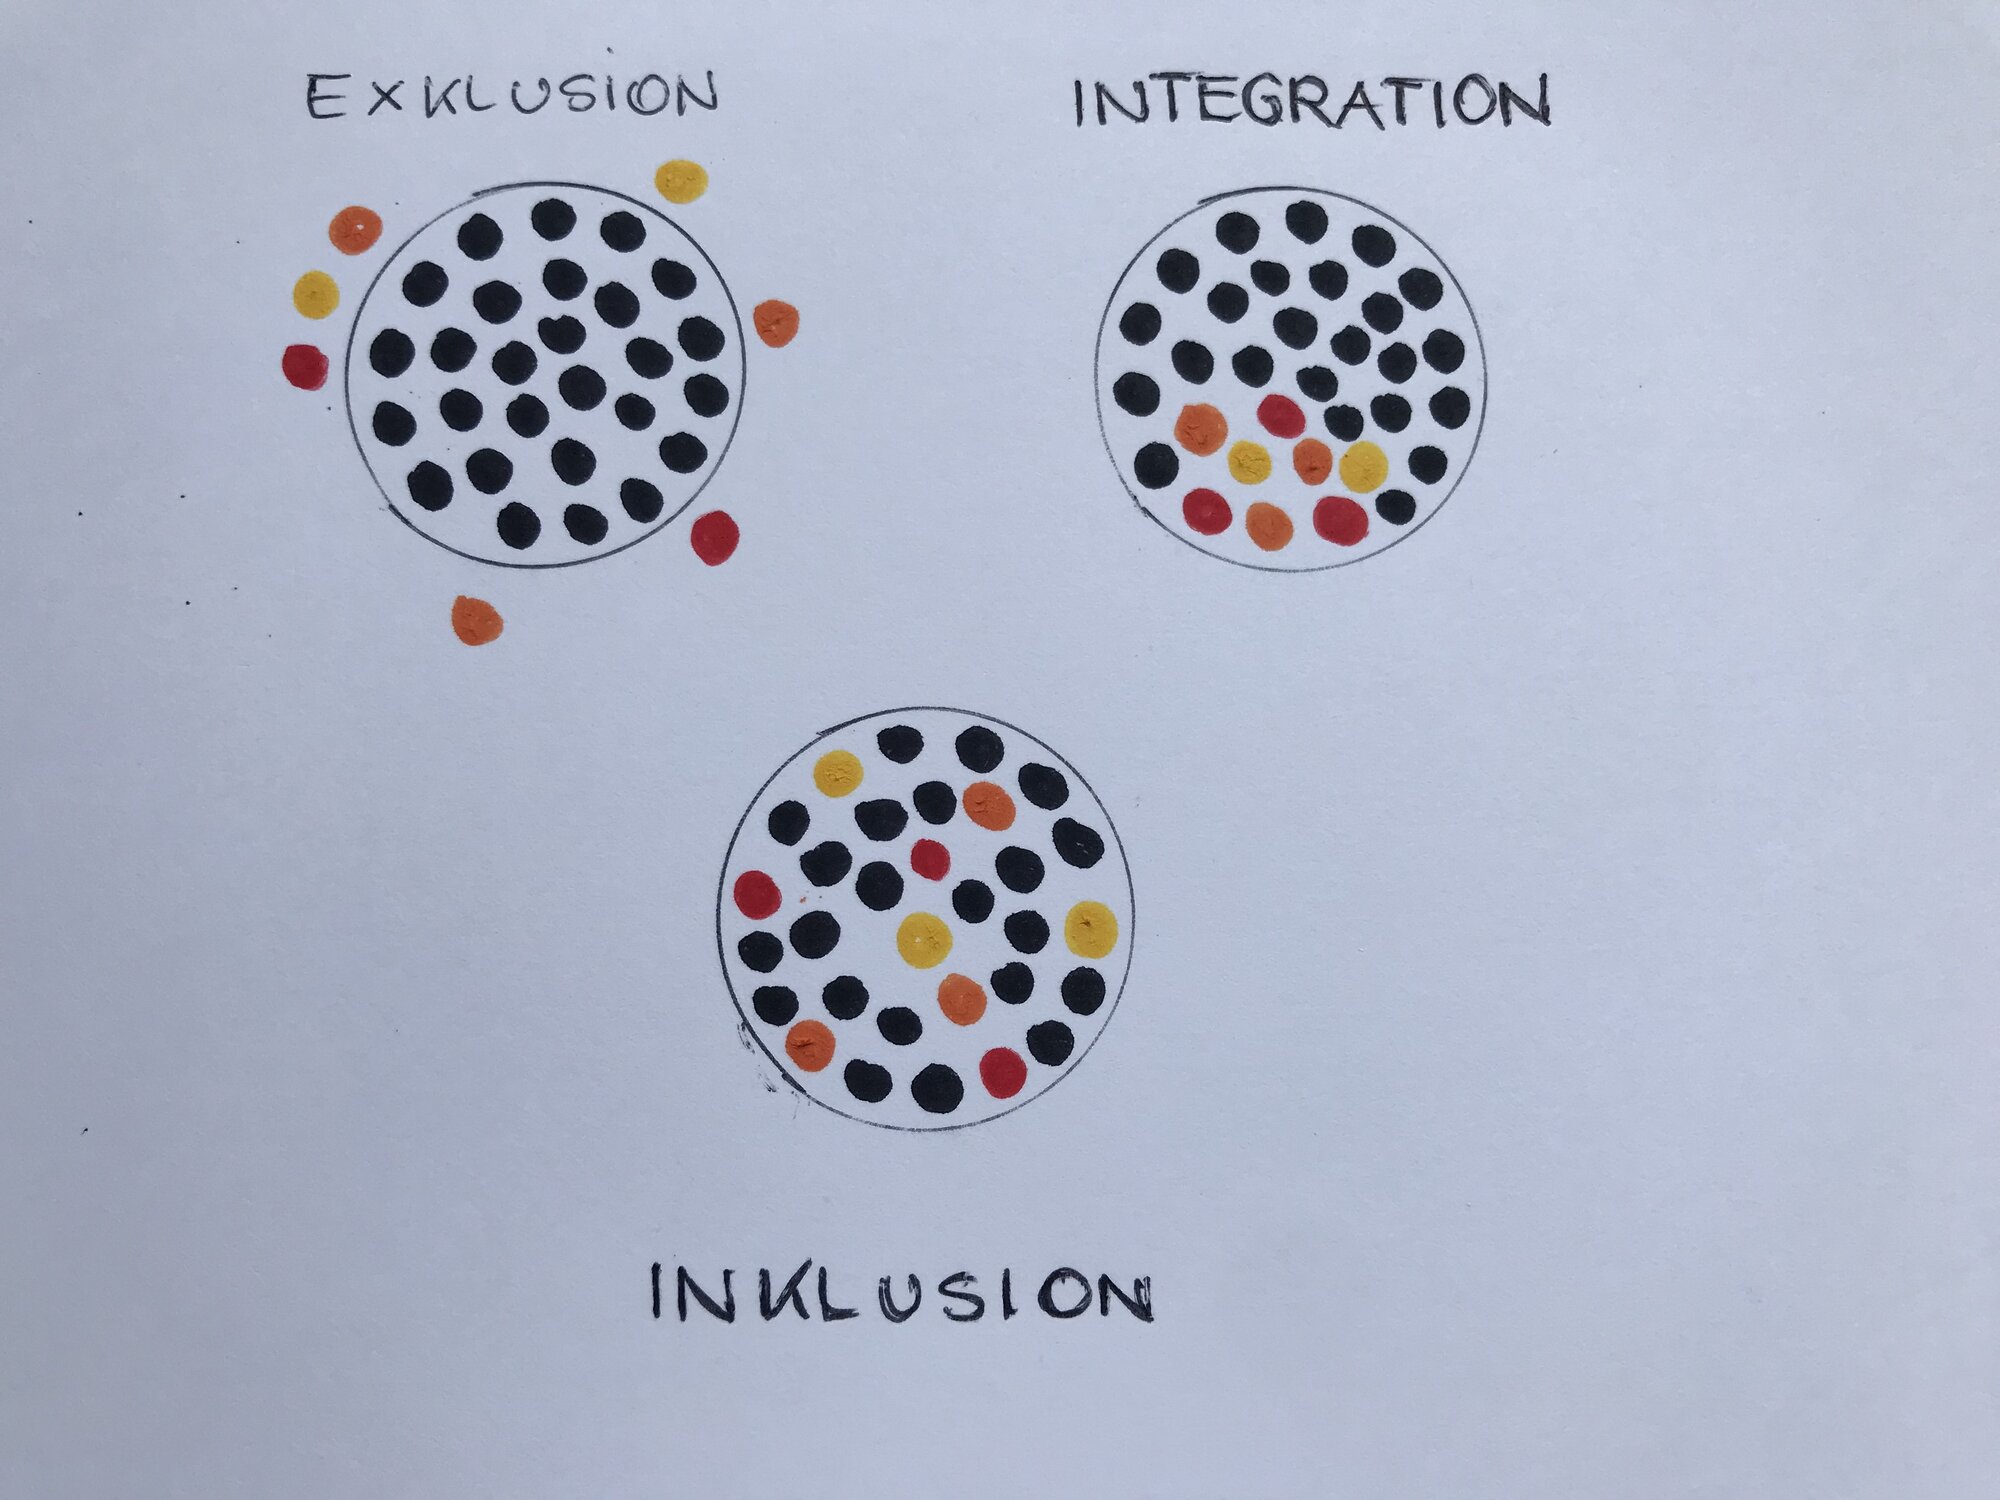 man sieht drei Kreise: im ersten Kreis sind alles schwarze Punkte im Kreis und außerhalb sind gelbe, orange und rote Punkte = Exklusion, im zweiten Kreis sind viele schwarze Punkte im Kreis und an einer Stelle aber nur dort gehäuft sind die gelben, orangen und roten Punkte = Integration, und im dritten Kreis sind schwarze, gelbe, orange und rote Punkte irgendwo innterhalb des Kreises verteilt = Inklusion